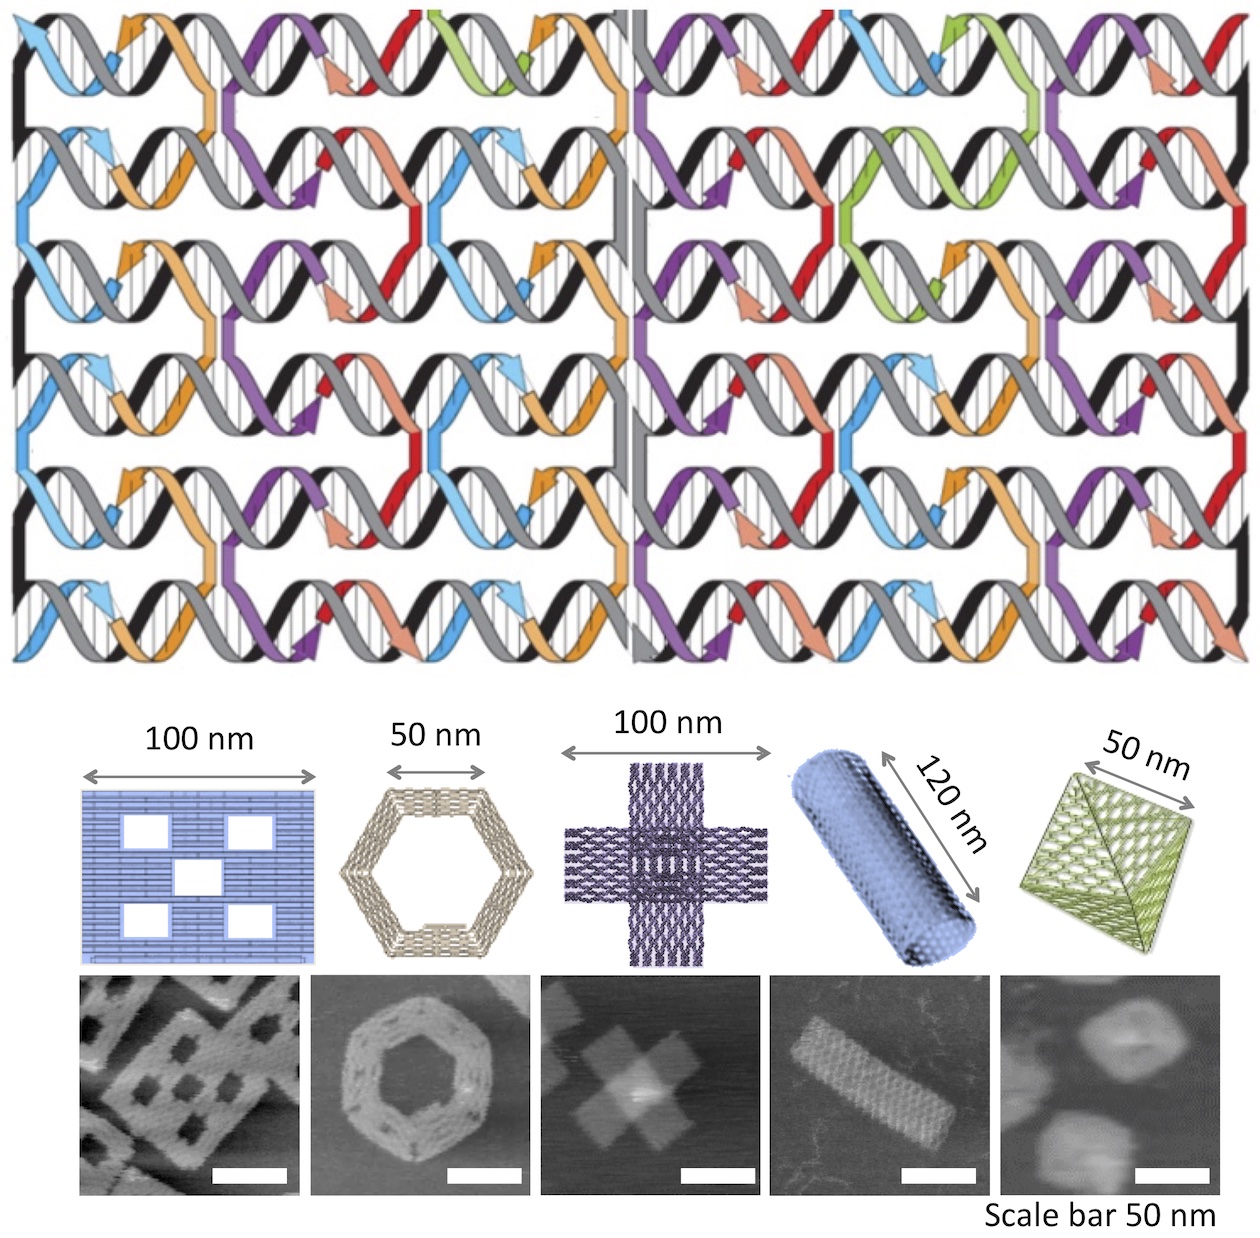 【図・写真】DNAオリガミの模式図と原子間力顕微鏡（AFM）で観察した写真